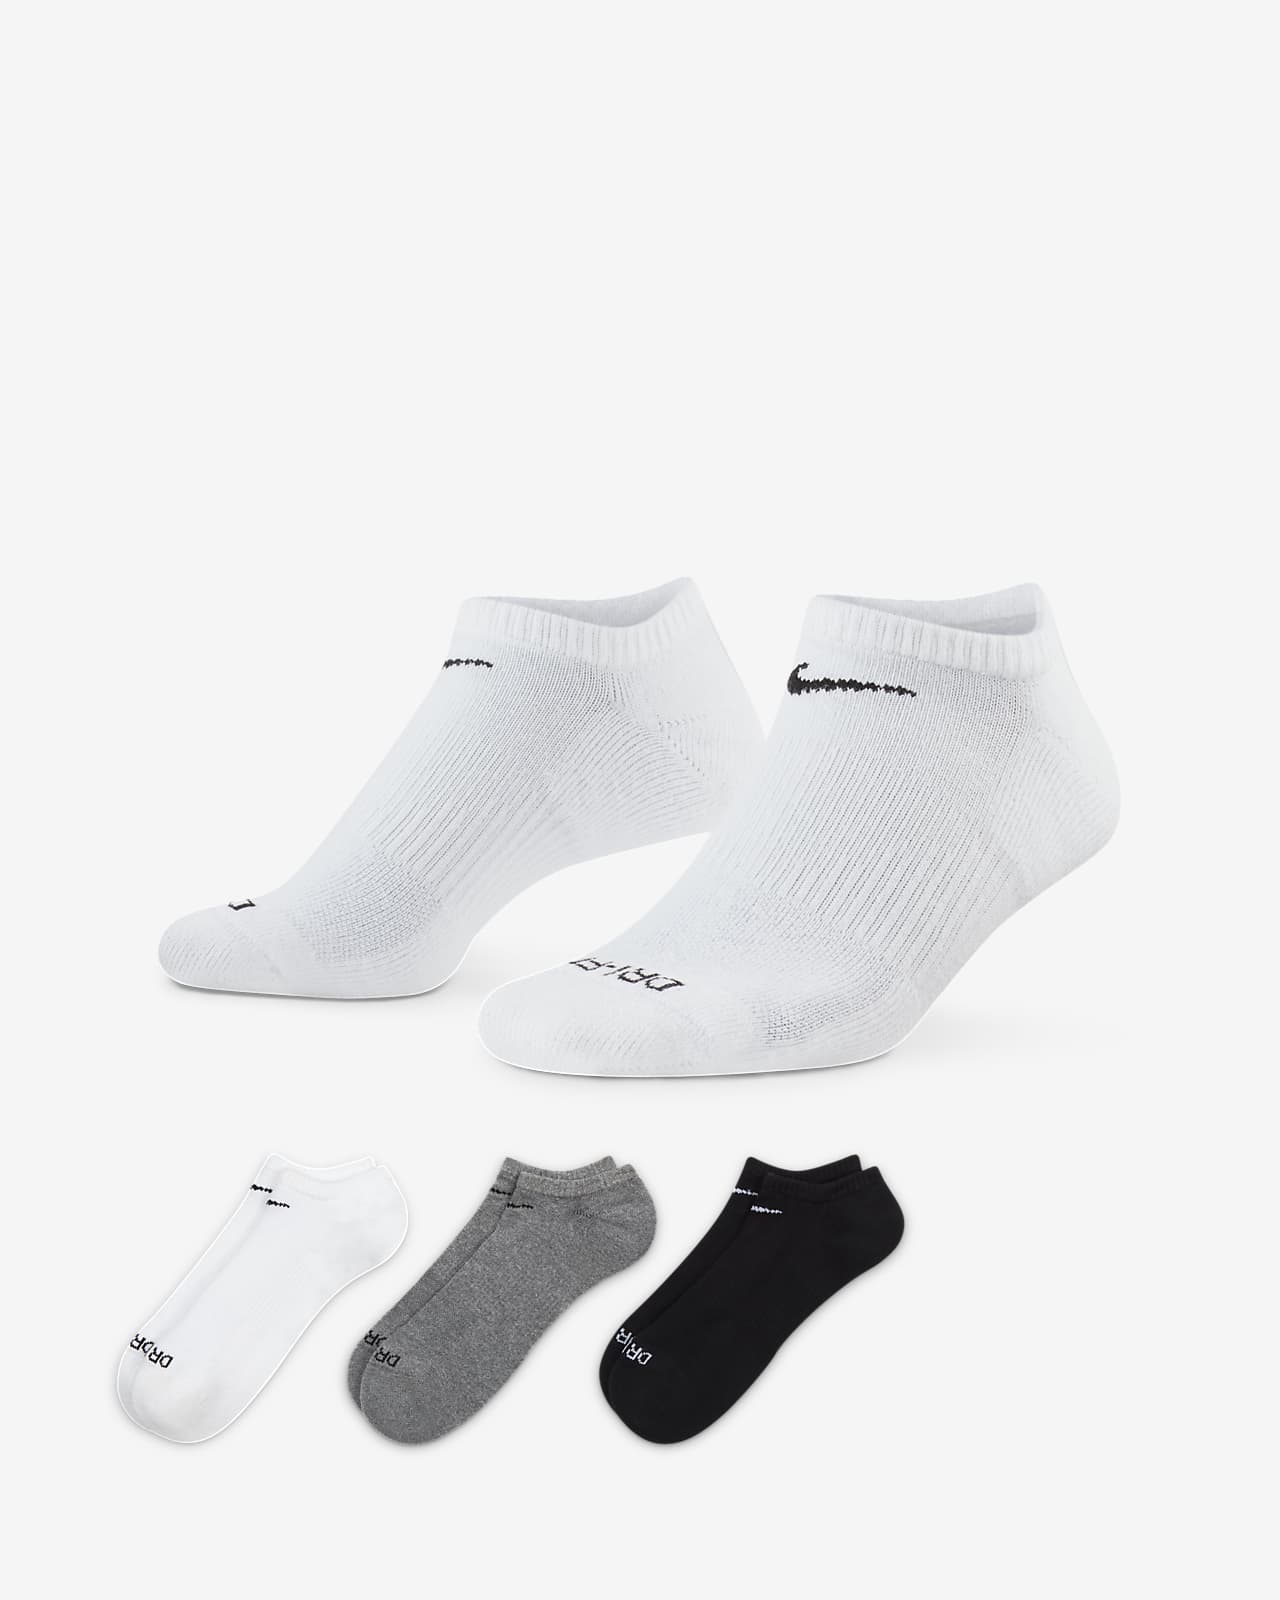 Calcetines de entrenamiento ocultos, con
amortiguación, Nike Everyday Plus (3
pares)